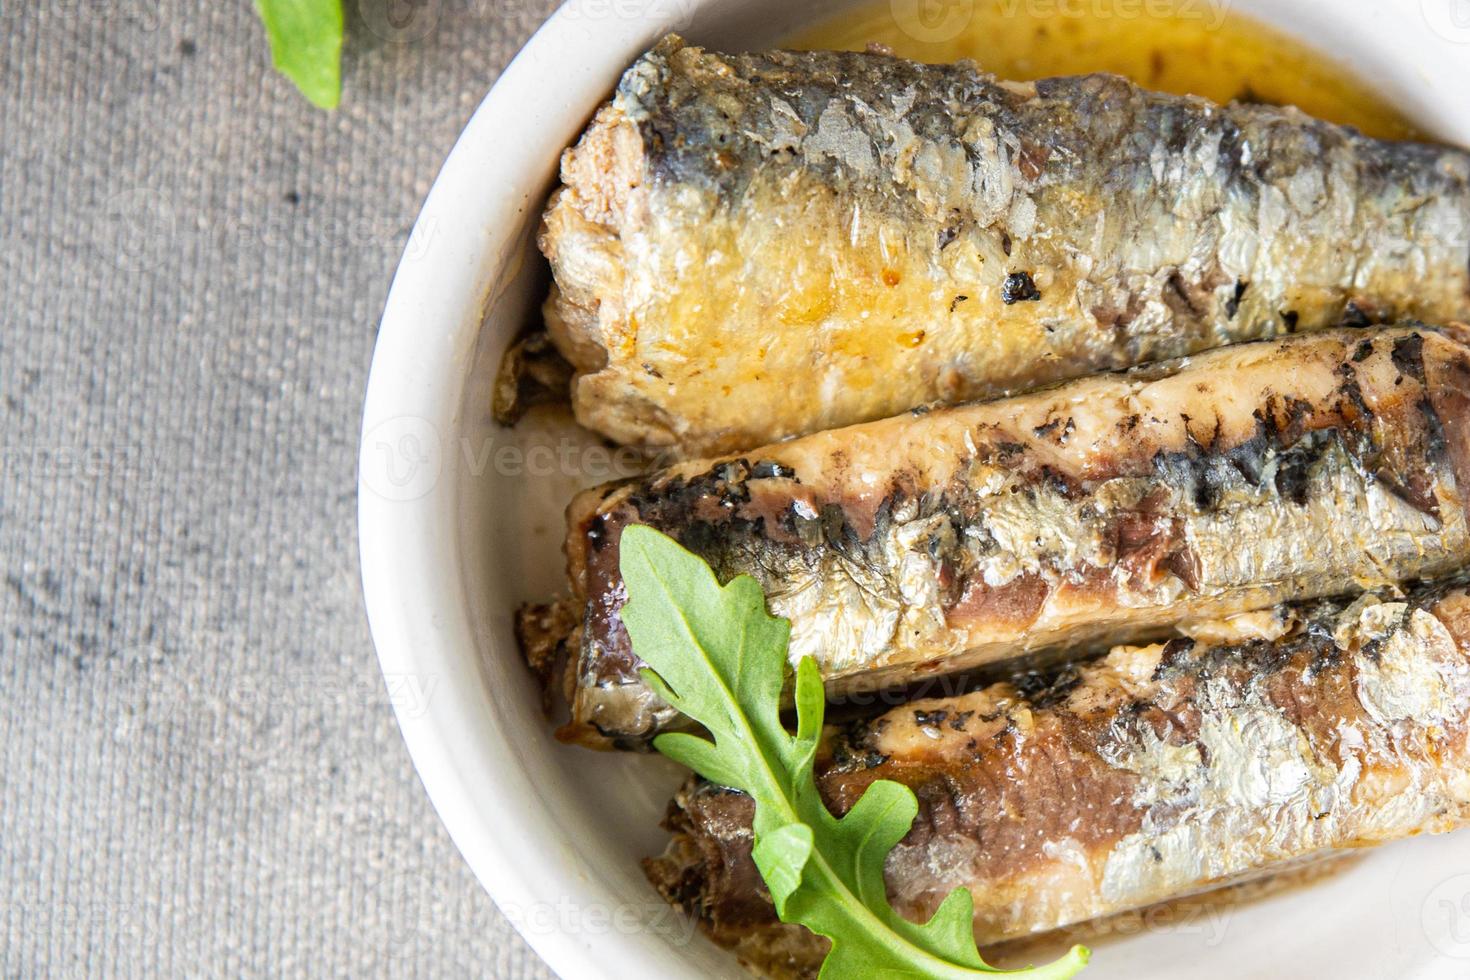 sardine ingeblikte vis zeevruchten vers gezond maaltijd voedsel snack dieet op tafel kopieer ruimte voedsel achtergrond rustiek bovenaanzicht vegetarisch eten foto